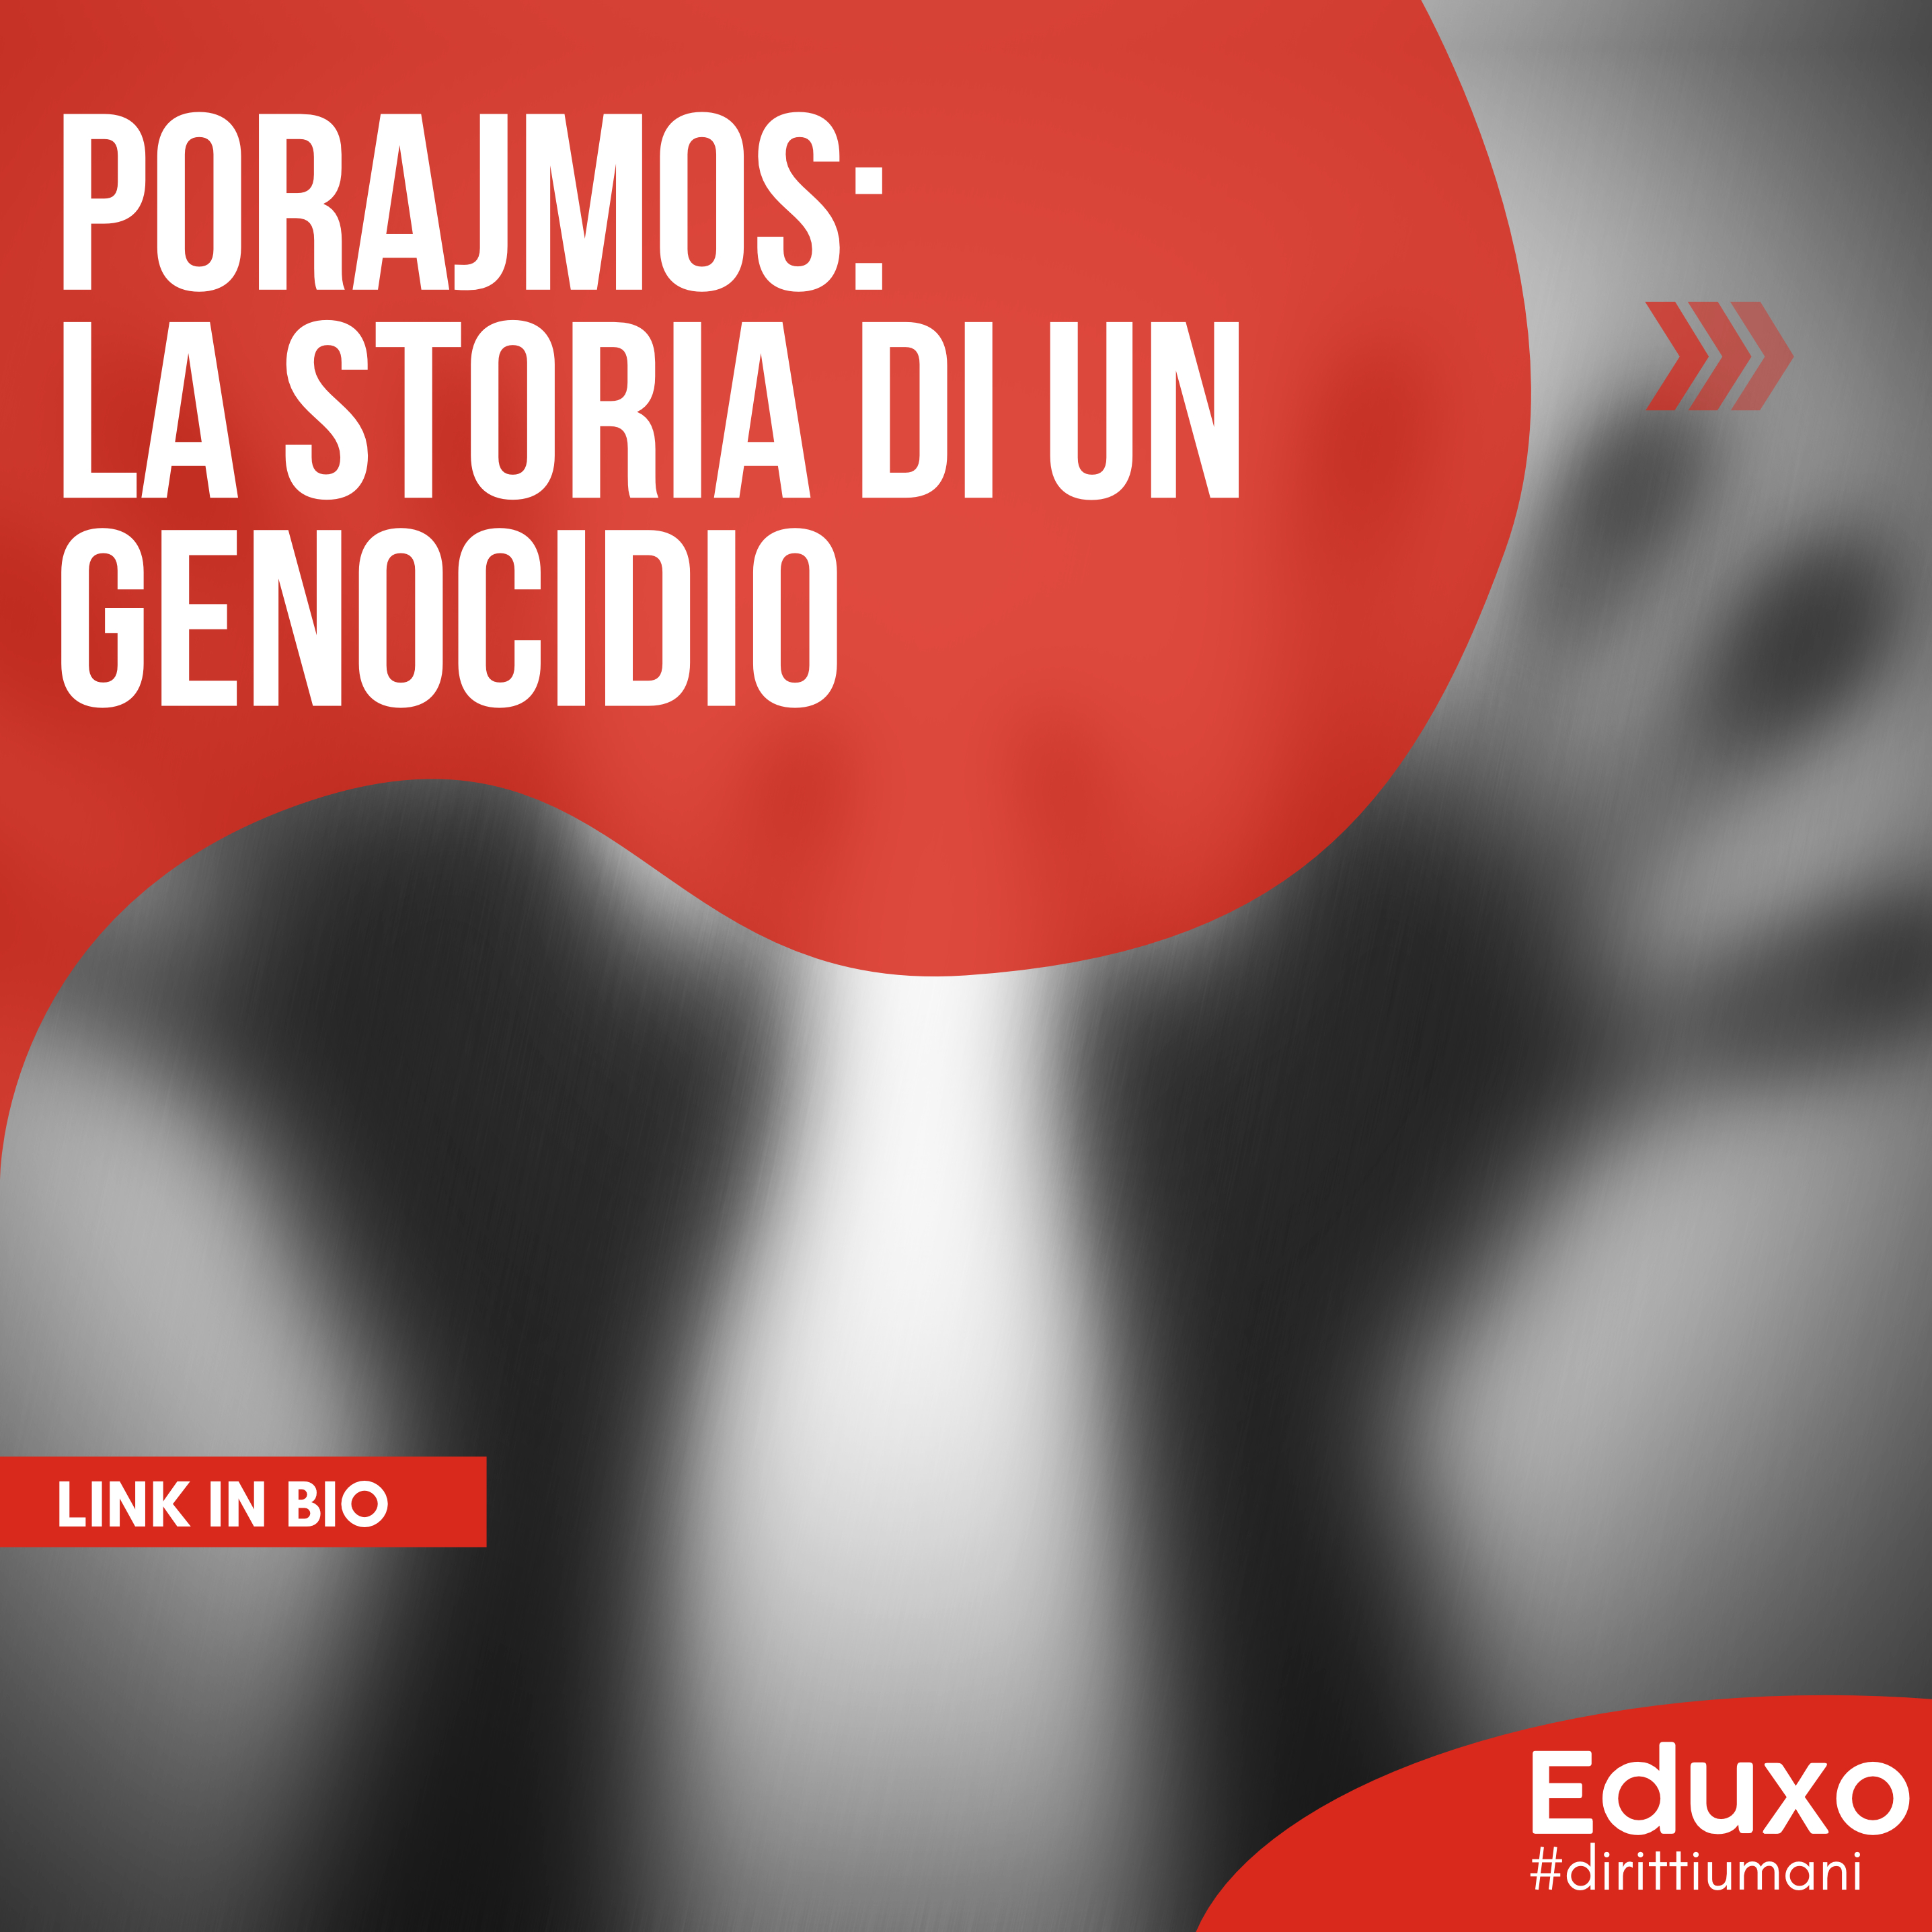 Al momento stai visualizzando Porajmos: la storia di un genocidio